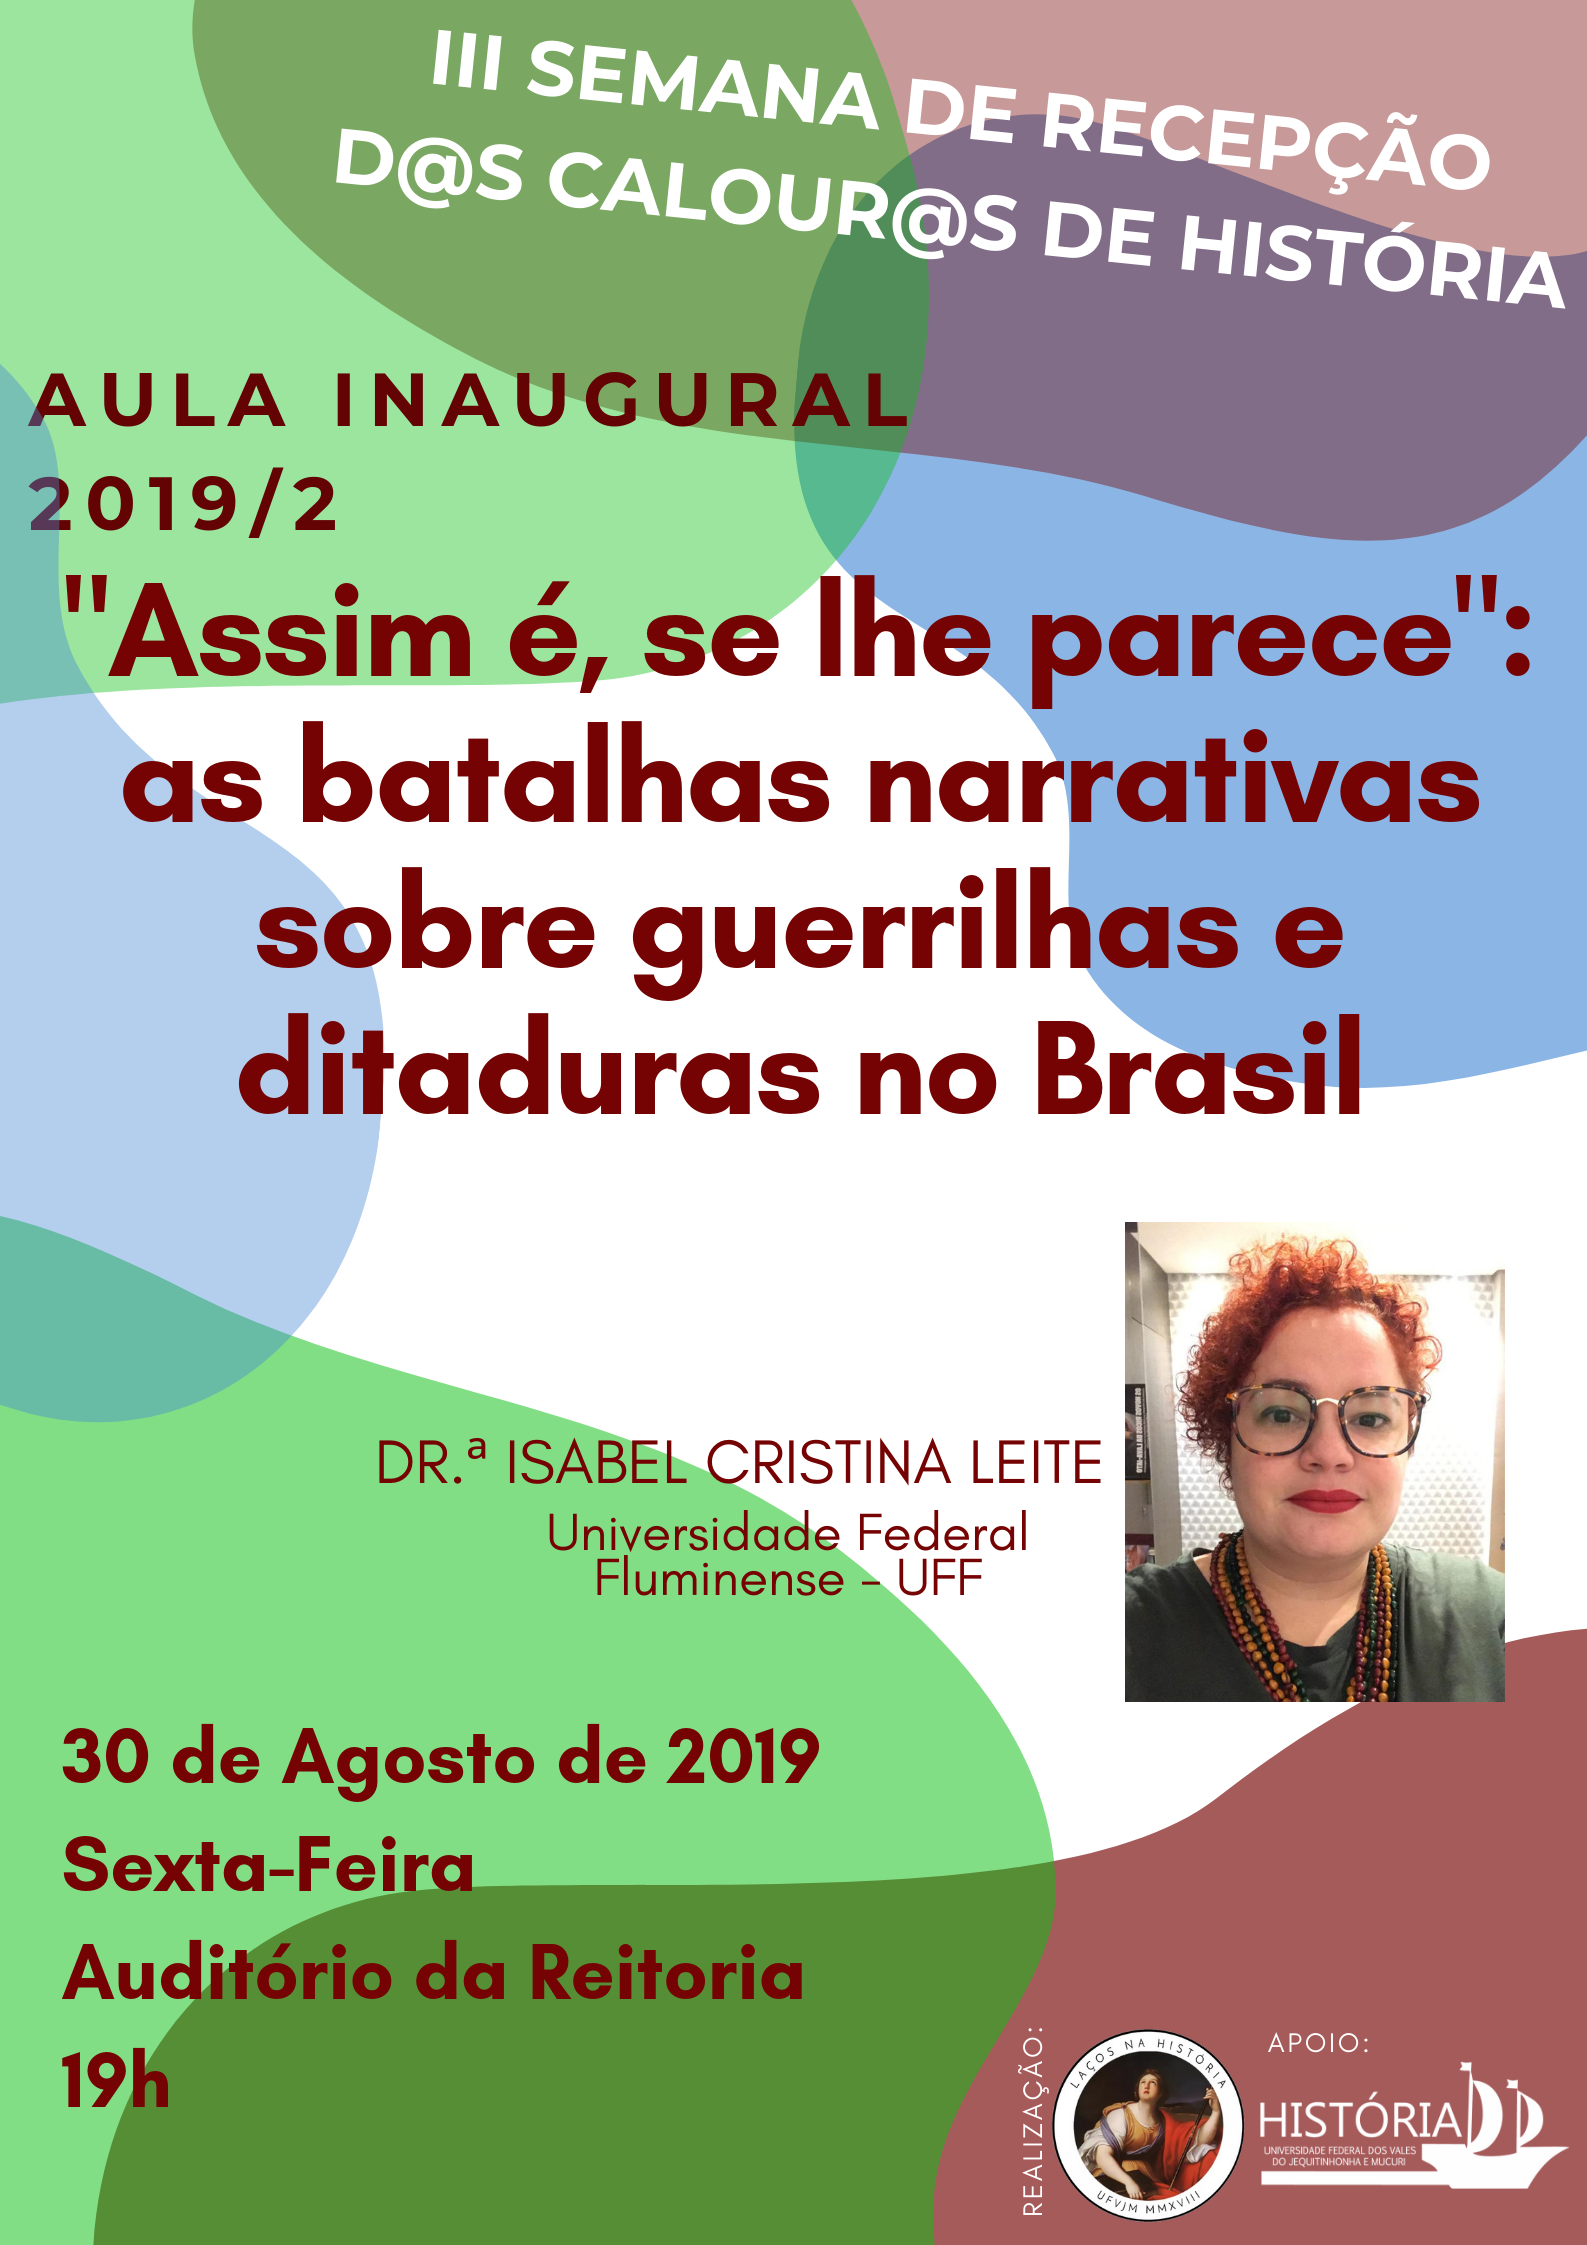 Aula inaugural da História debate narrativas sobre guerrilhas e ditadura militar no Brasil